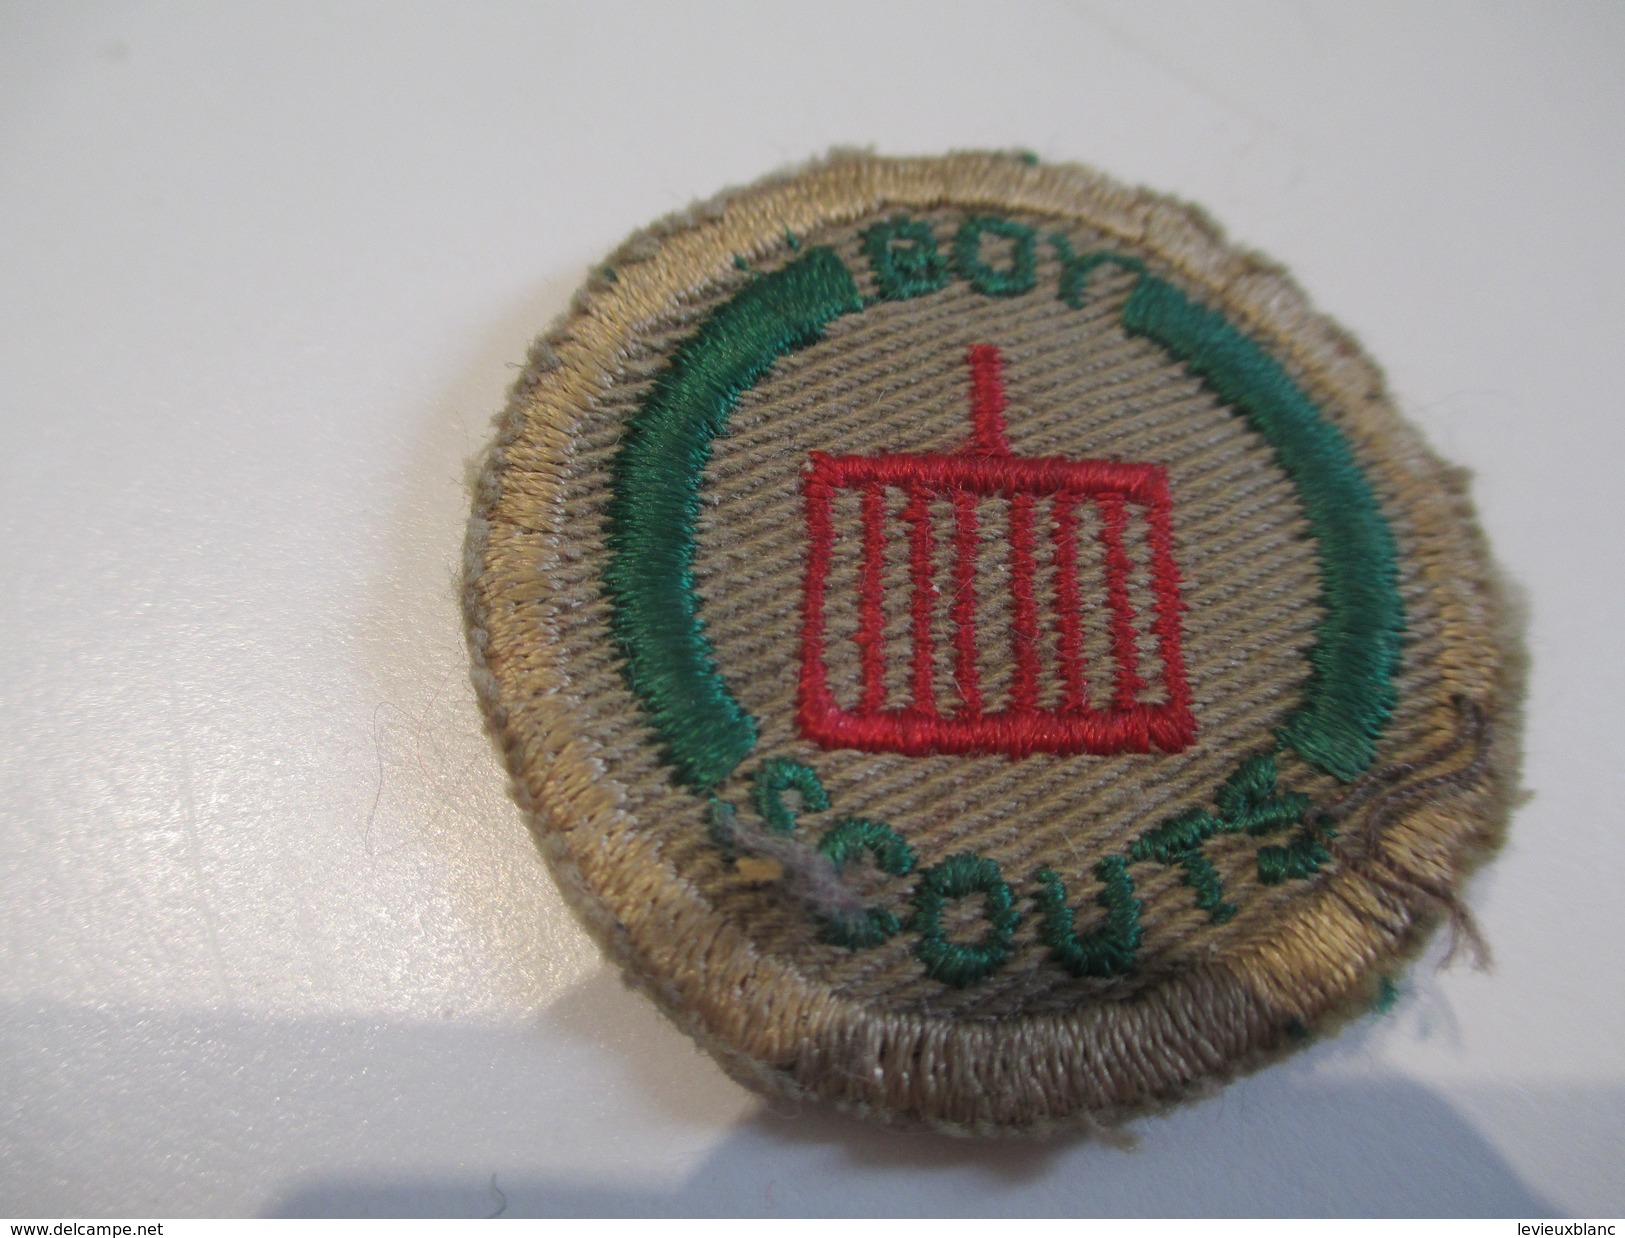 Ecusson Tissu Ancien /SCOUT/ CANADA /Grille / Boy Scouts/ Années 1950-1960   ET144 - Patches